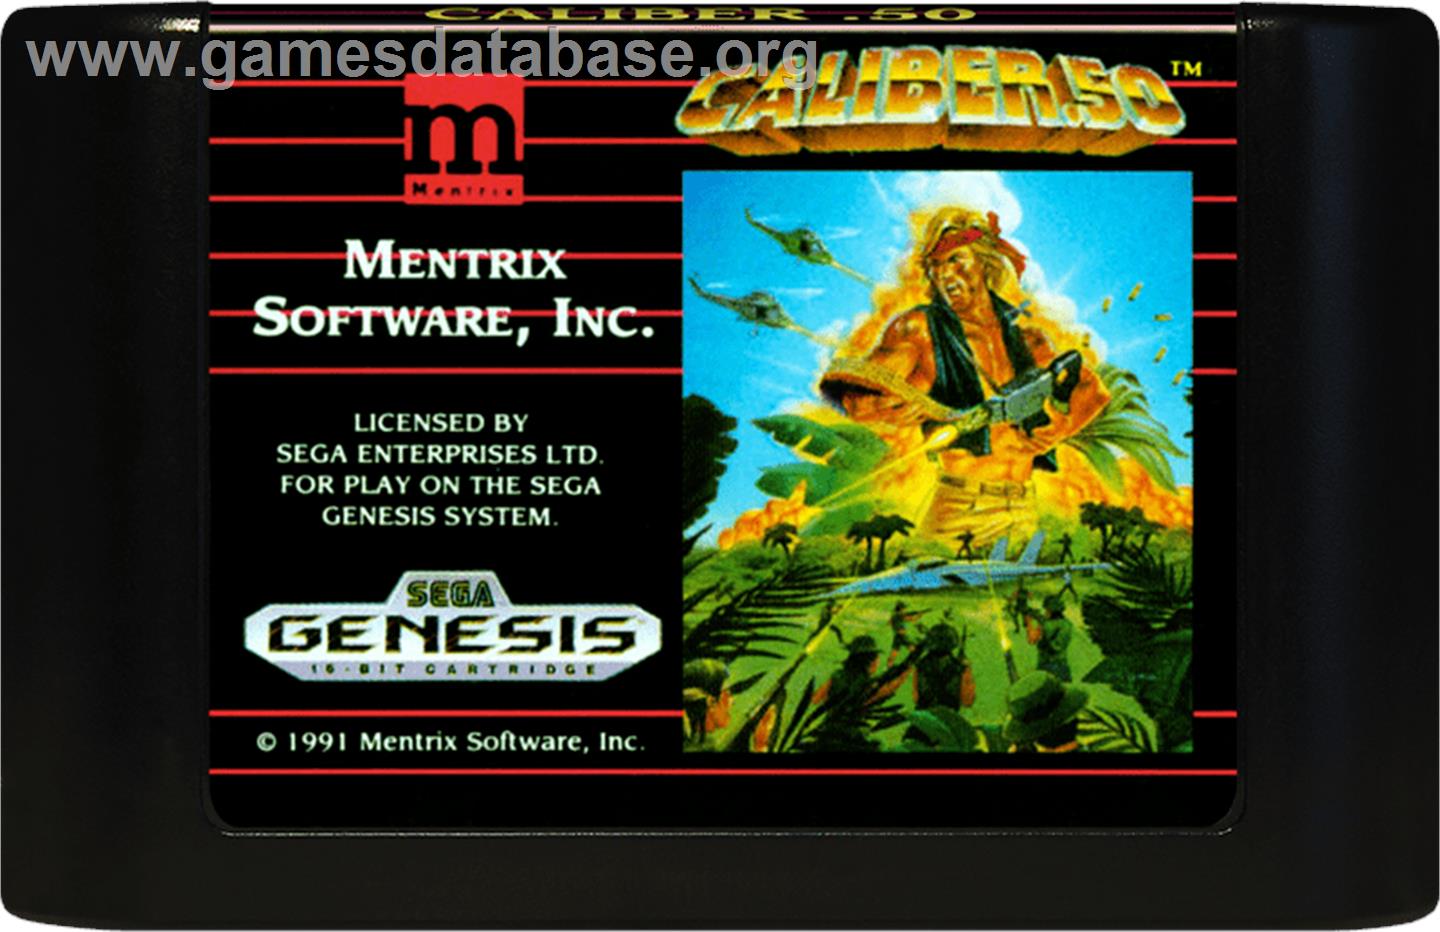 Caliber 50 - Sega Genesis - Artwork - Cartridge